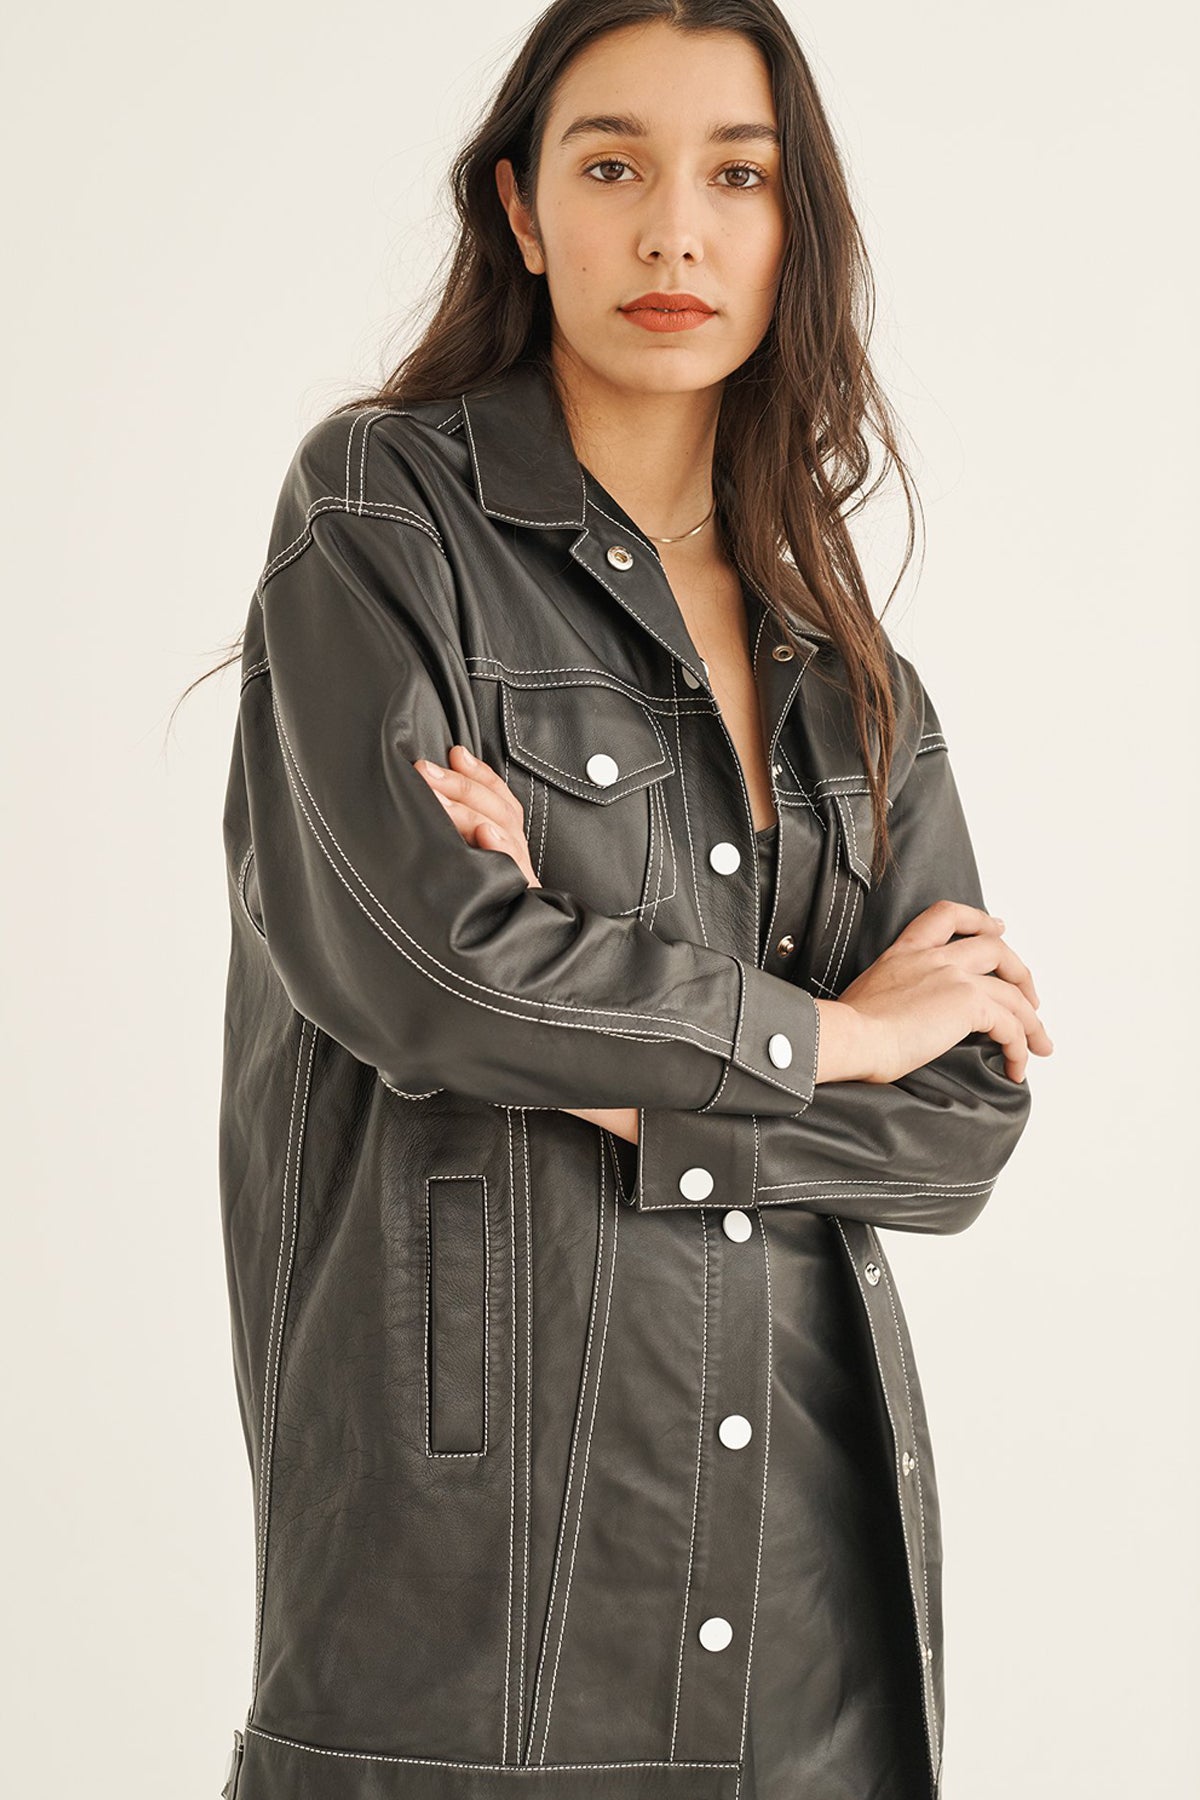 women's long black leather jacket